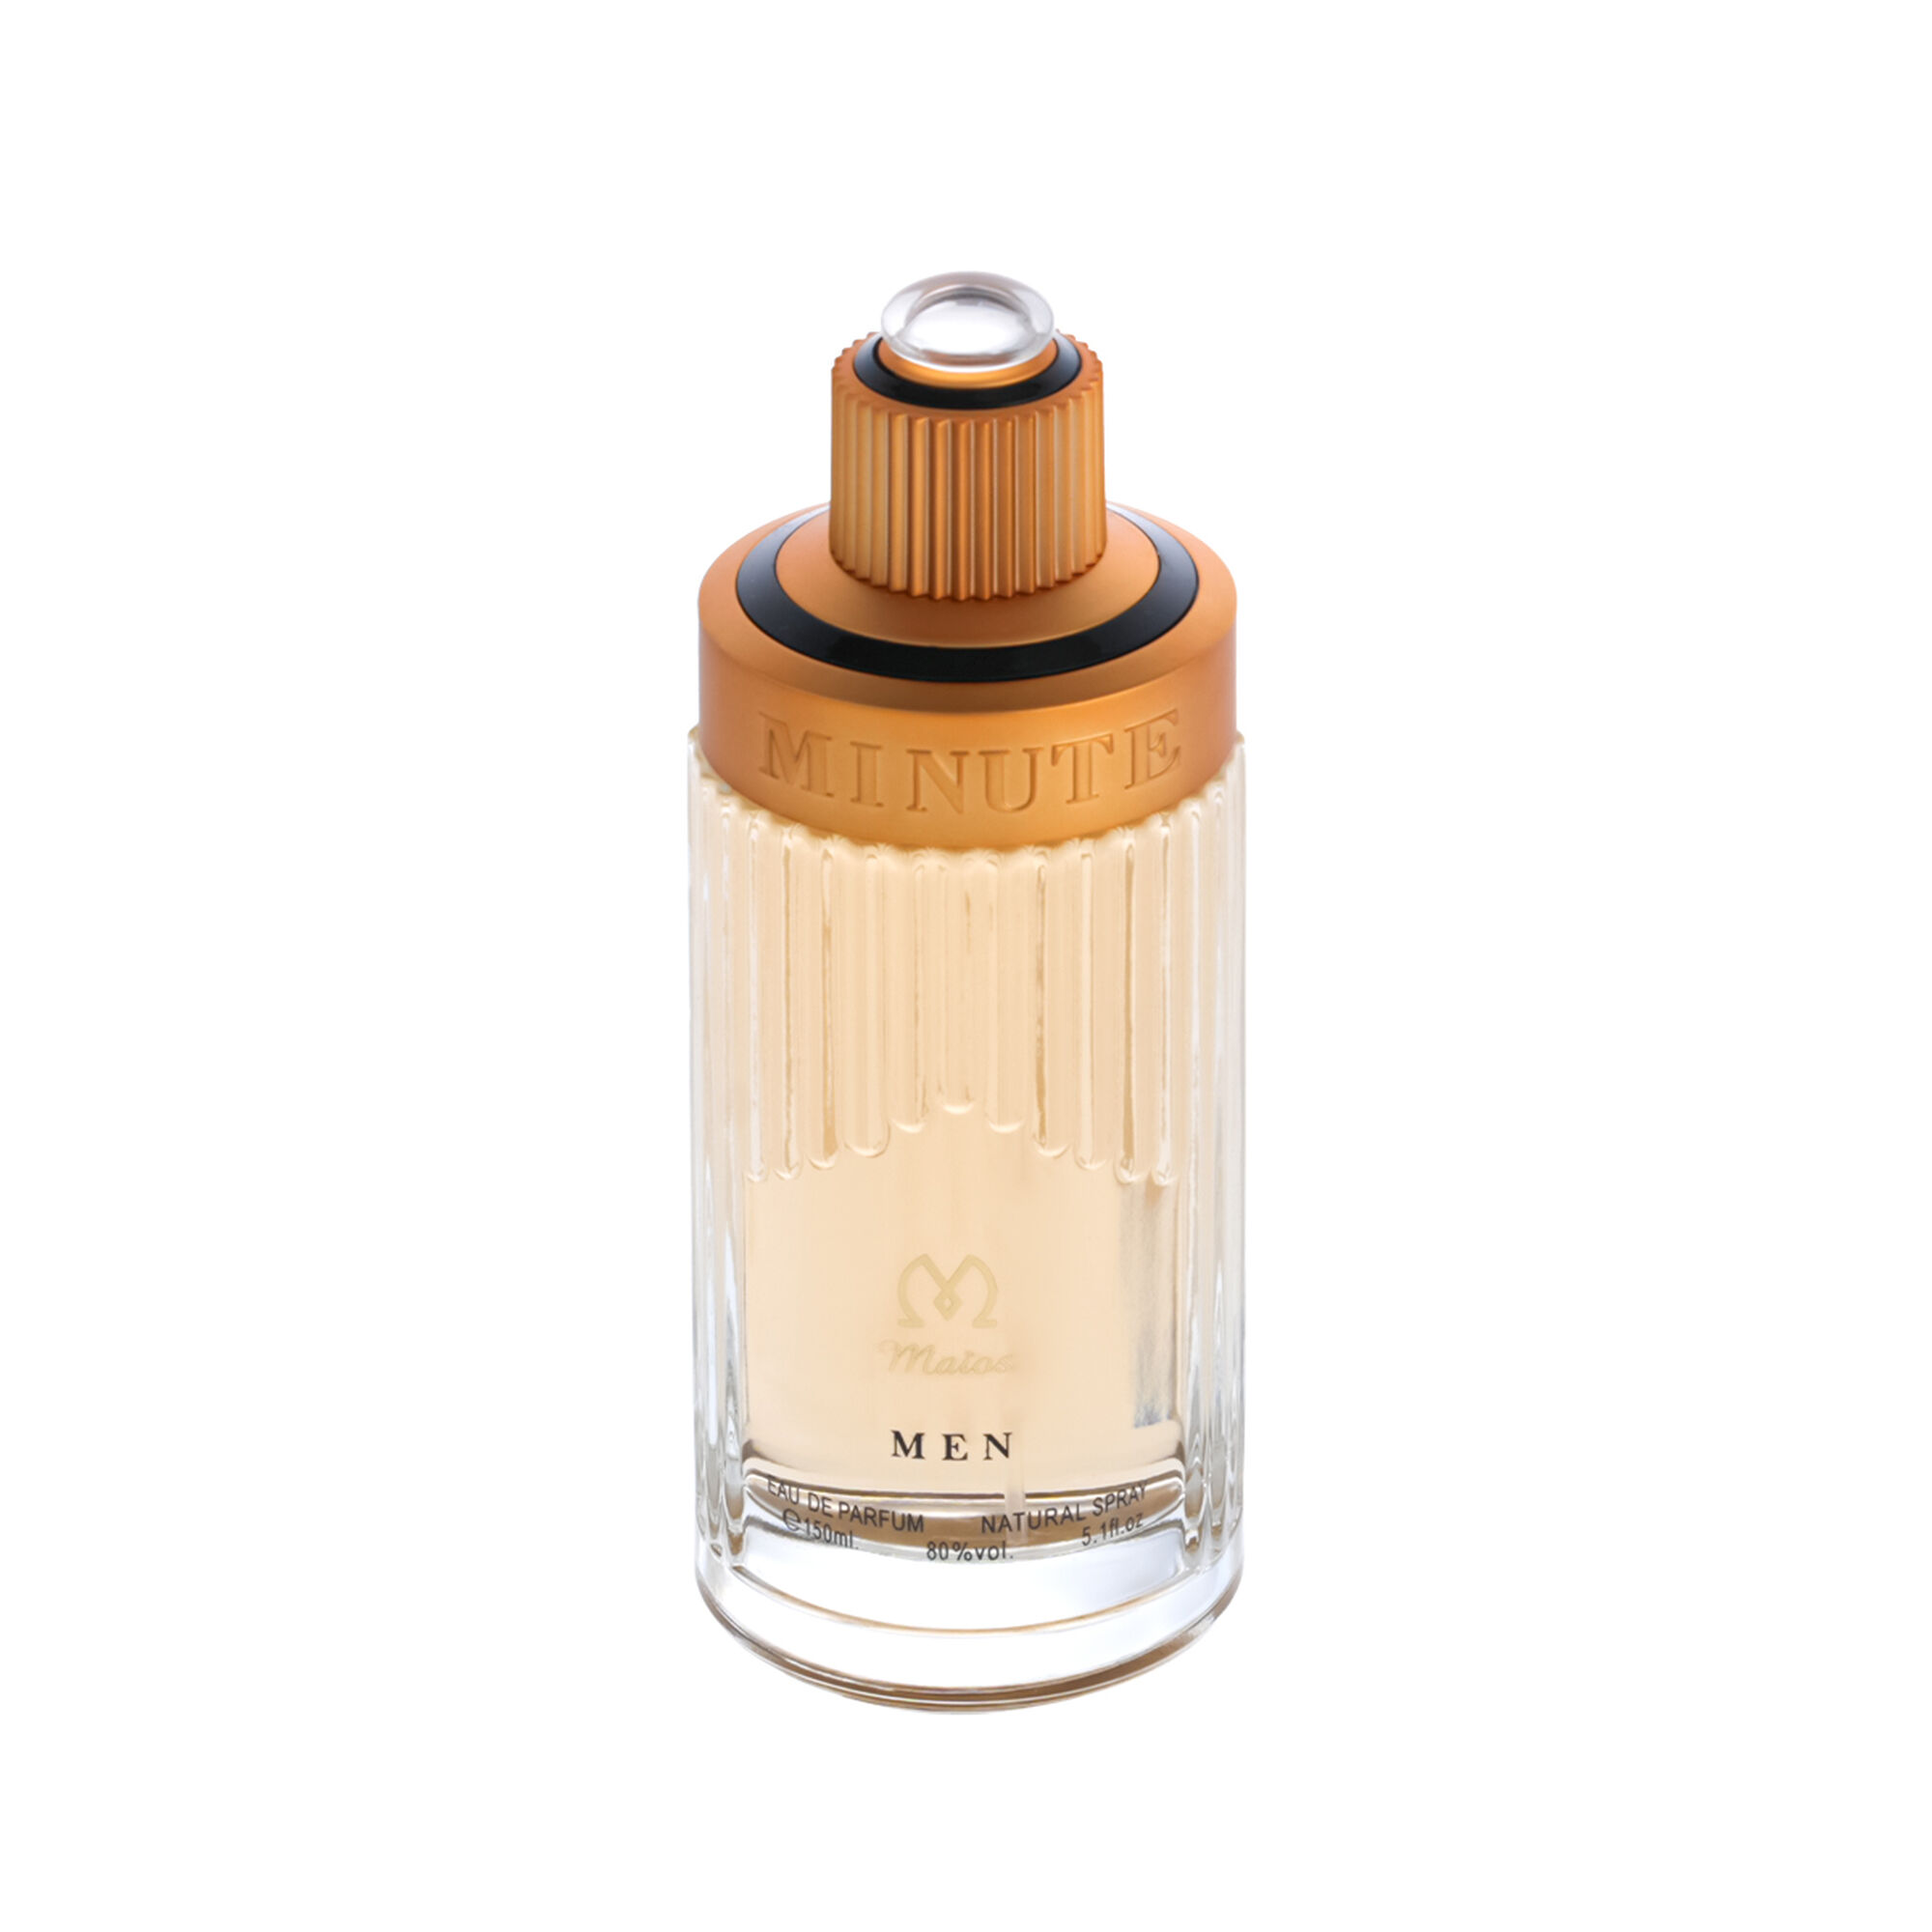 Minute Perfume by Maios 100ml 150 ml